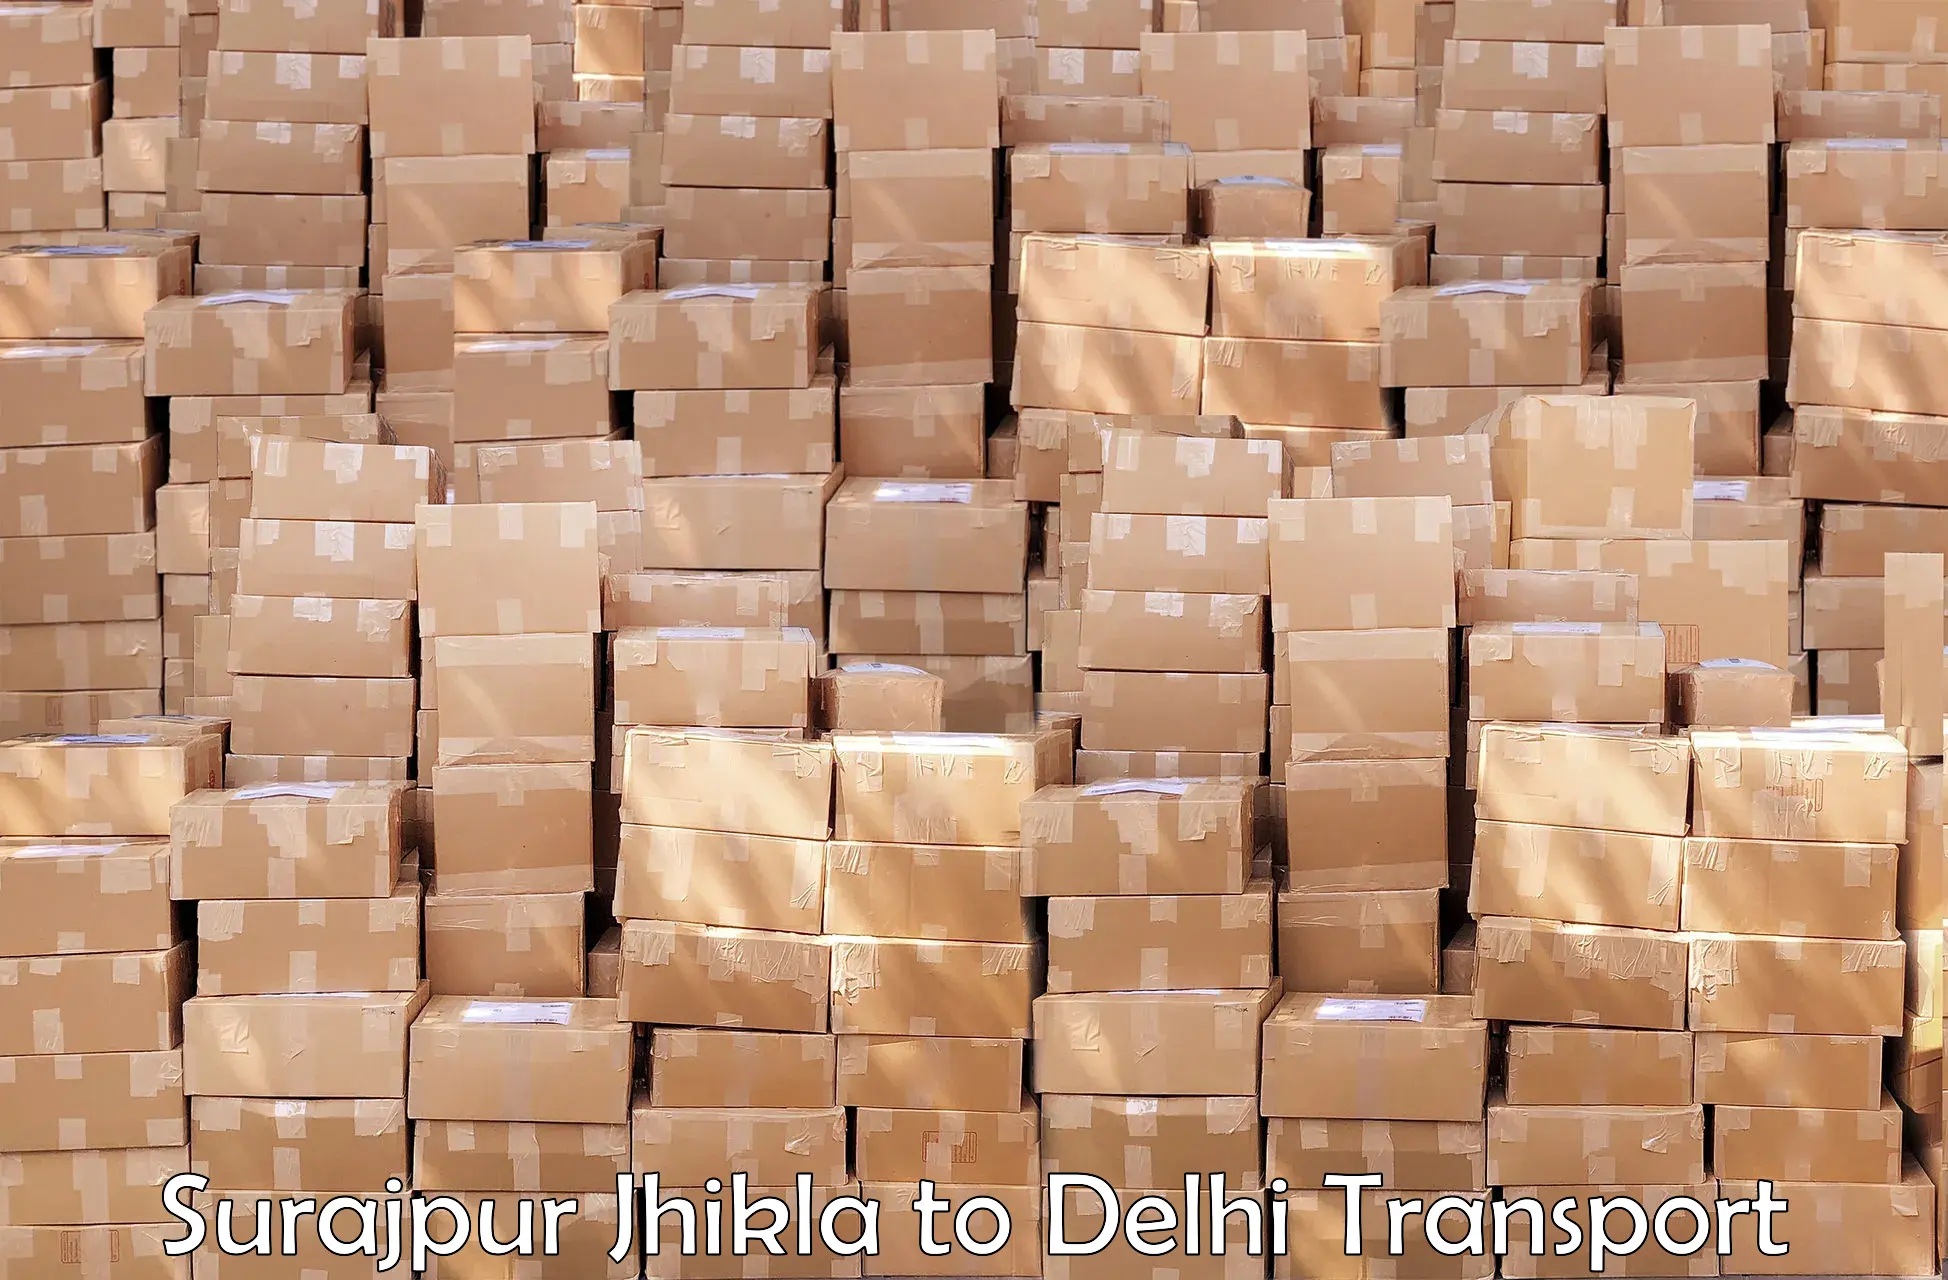 Nearby transport service in Surajpur Jhikla to IIT Delhi